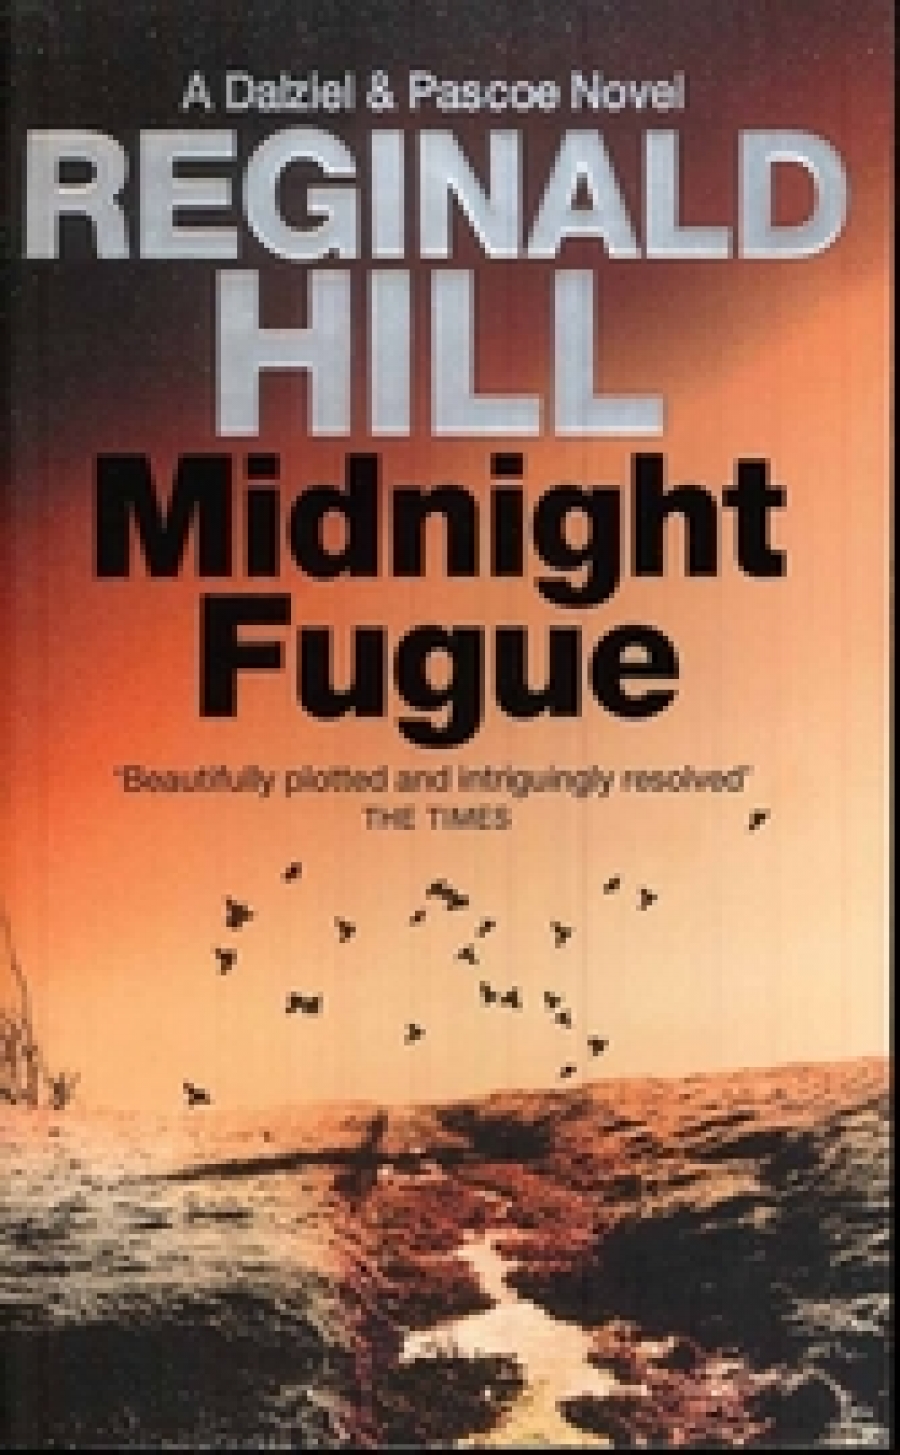 Hill, Reginald Midnight Fugue 